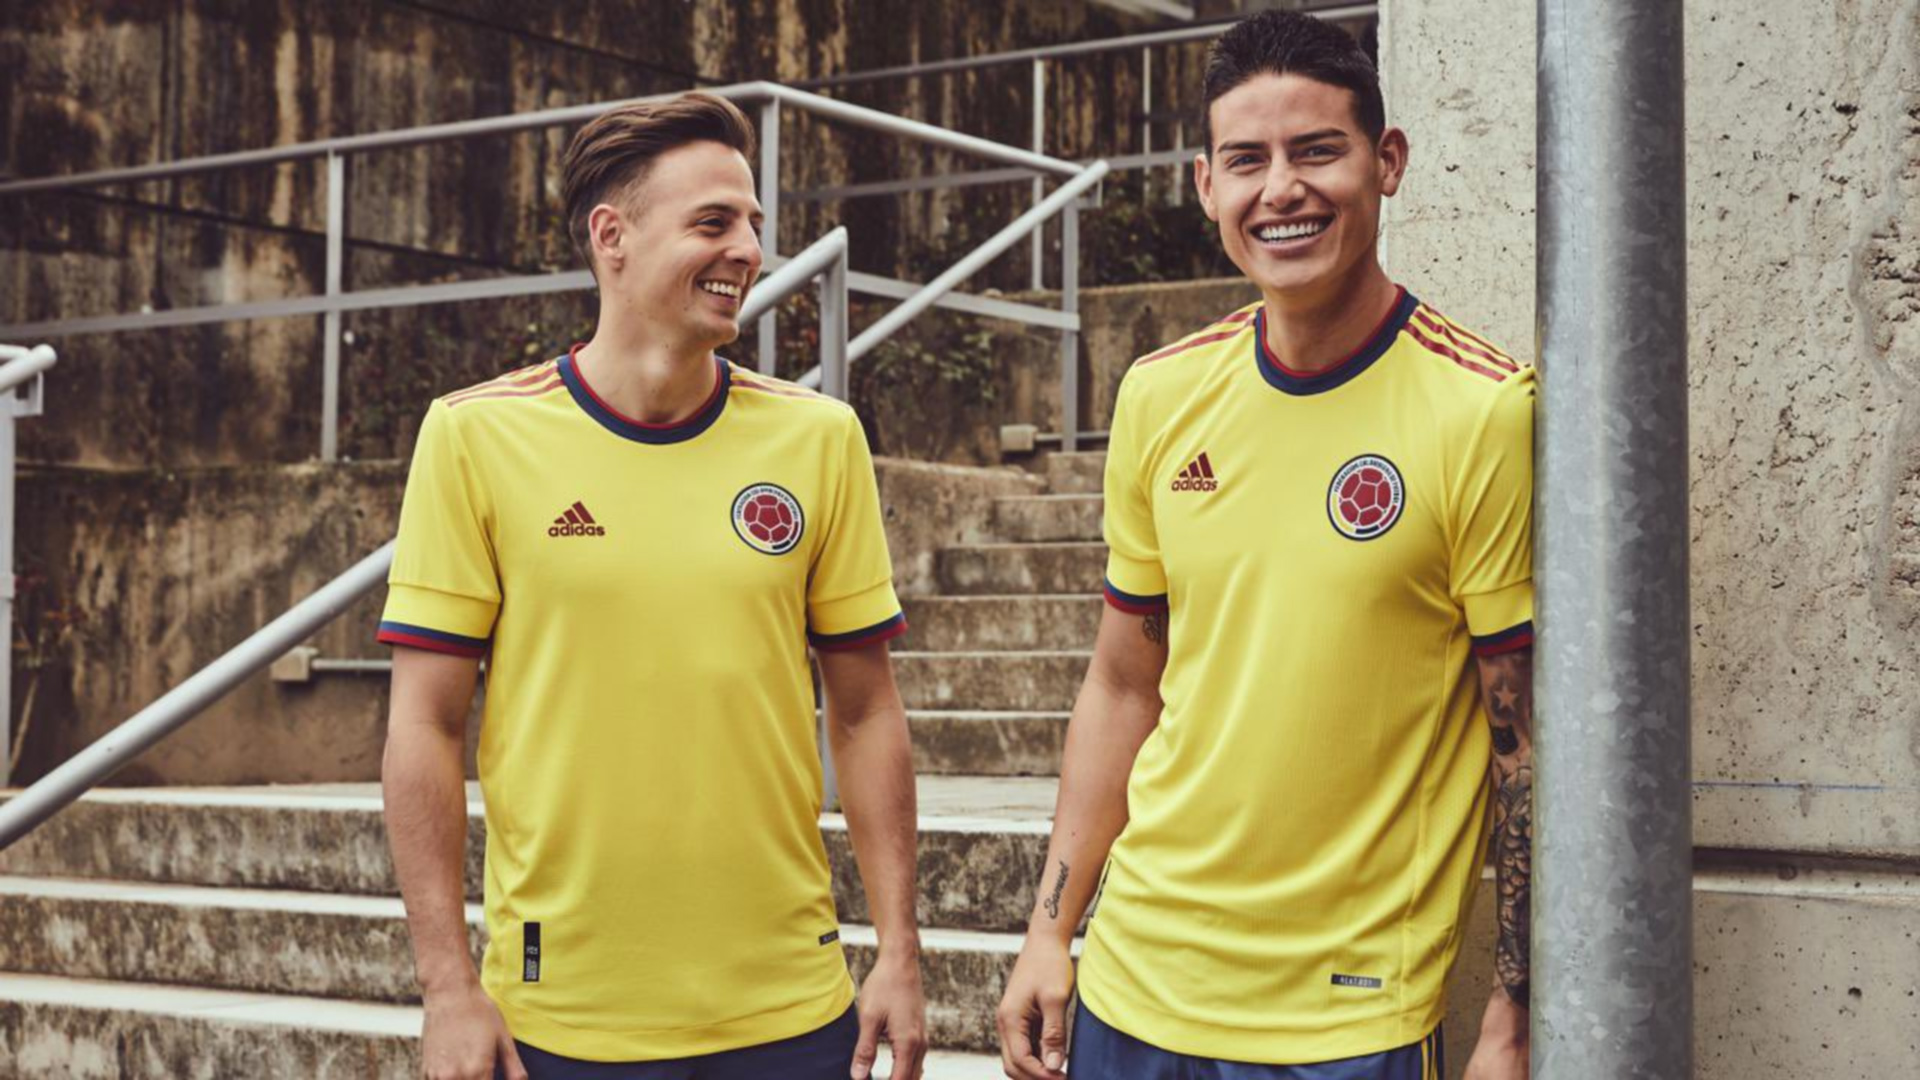 James como uno de los modelos, fue presentada oficialmente la nueva camiseta de la Selección Colombia: los detalles del diseño - Infobae